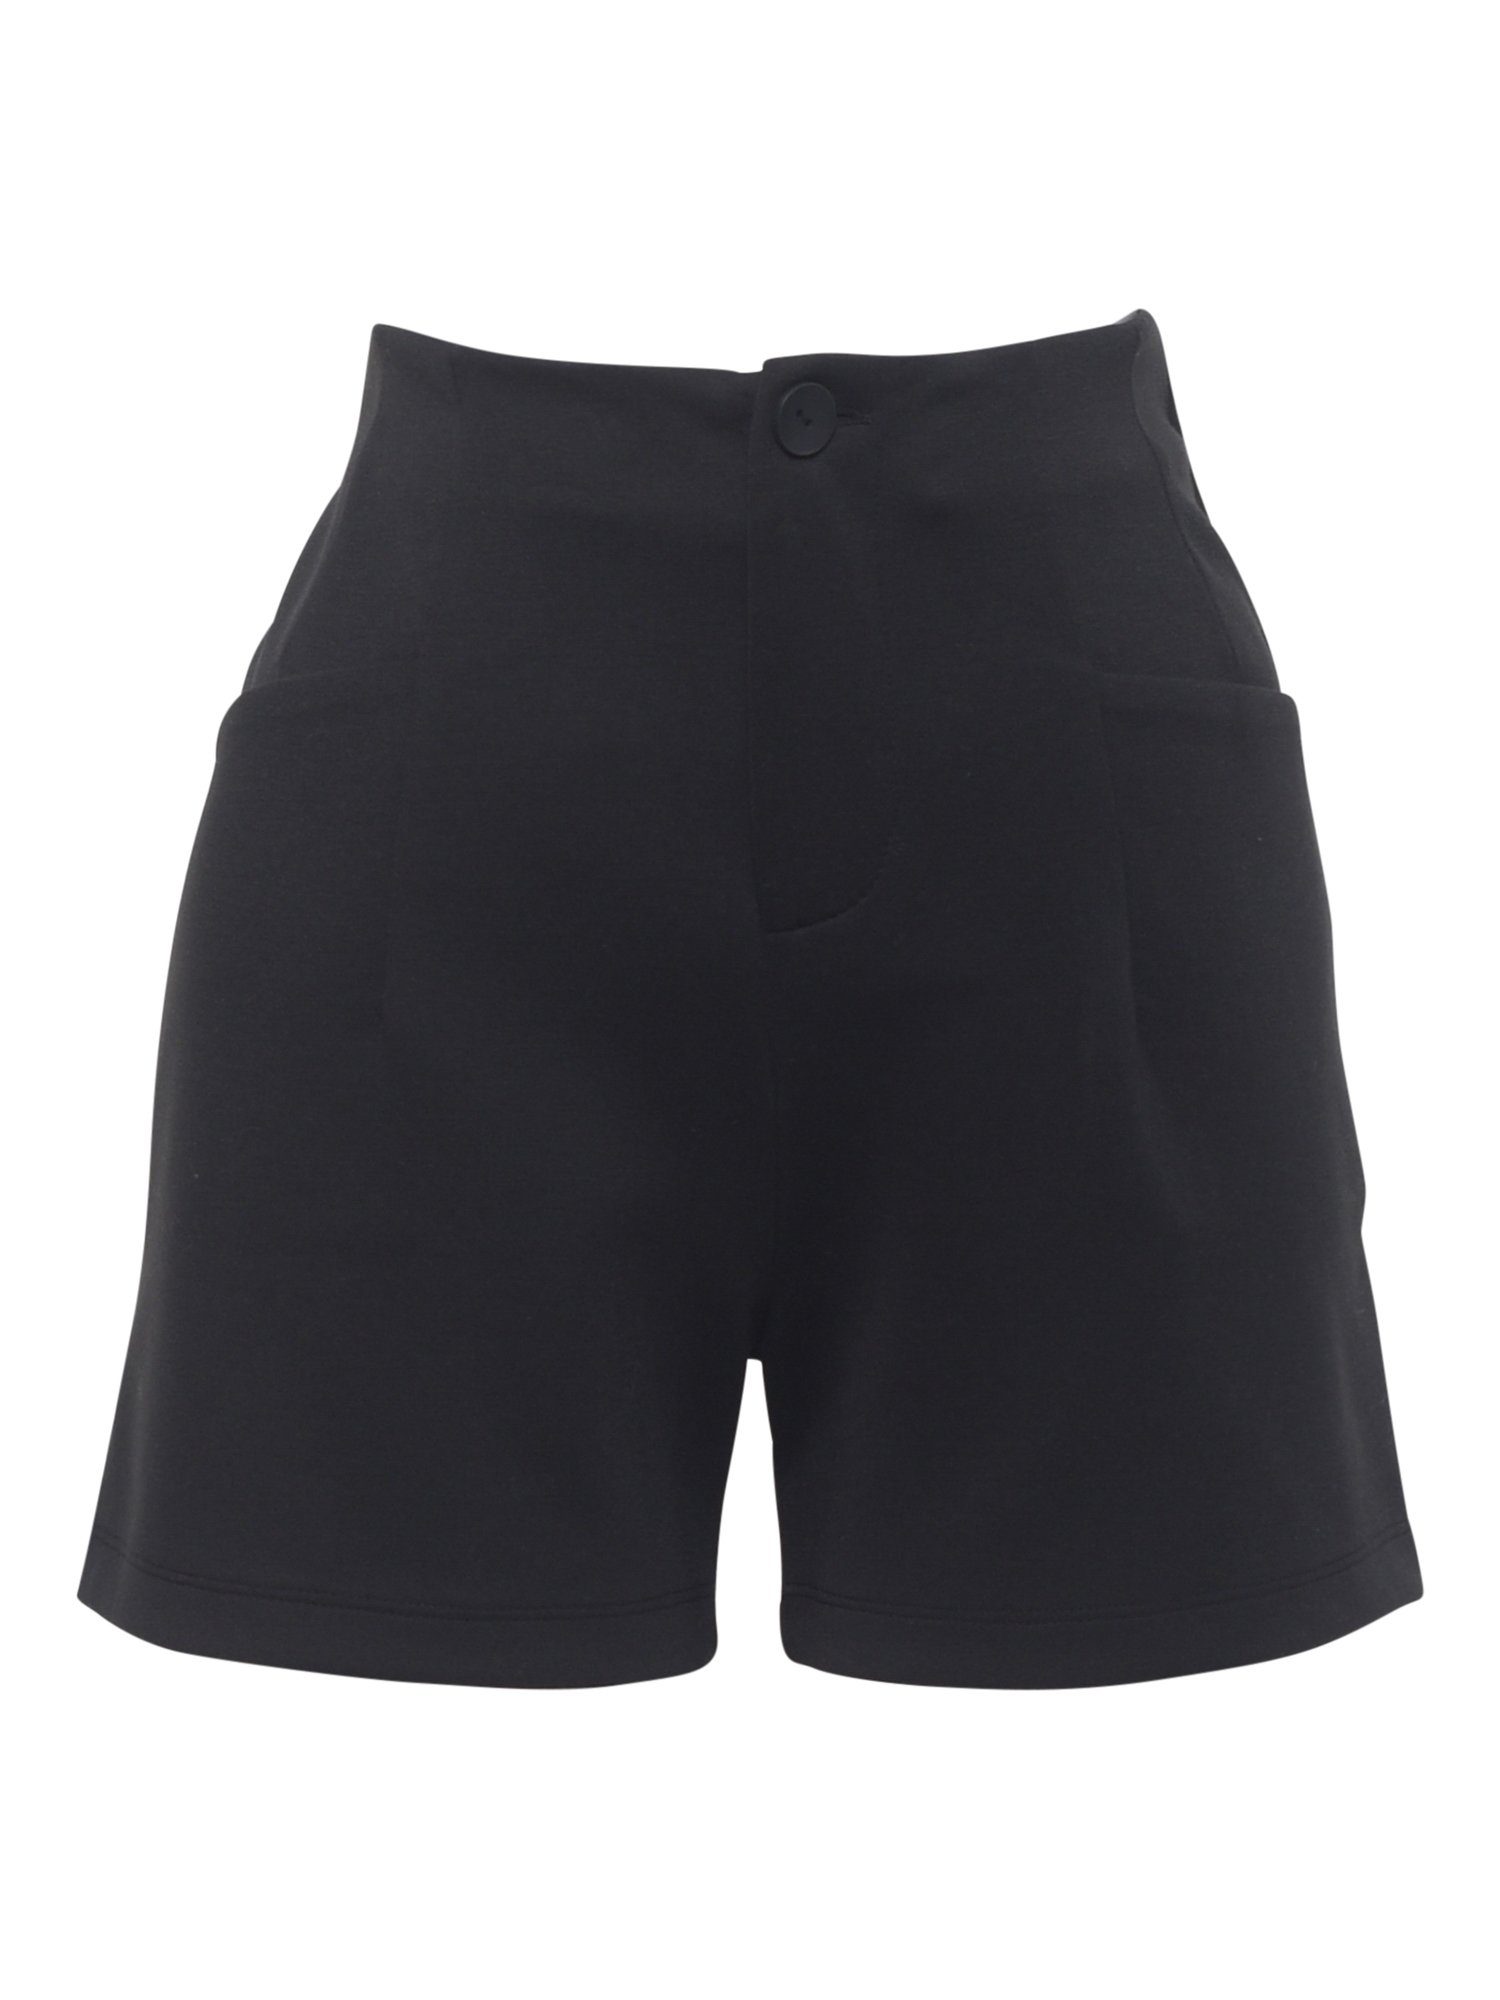 'Wilma' Freshlions Shorts schwarz Shorts